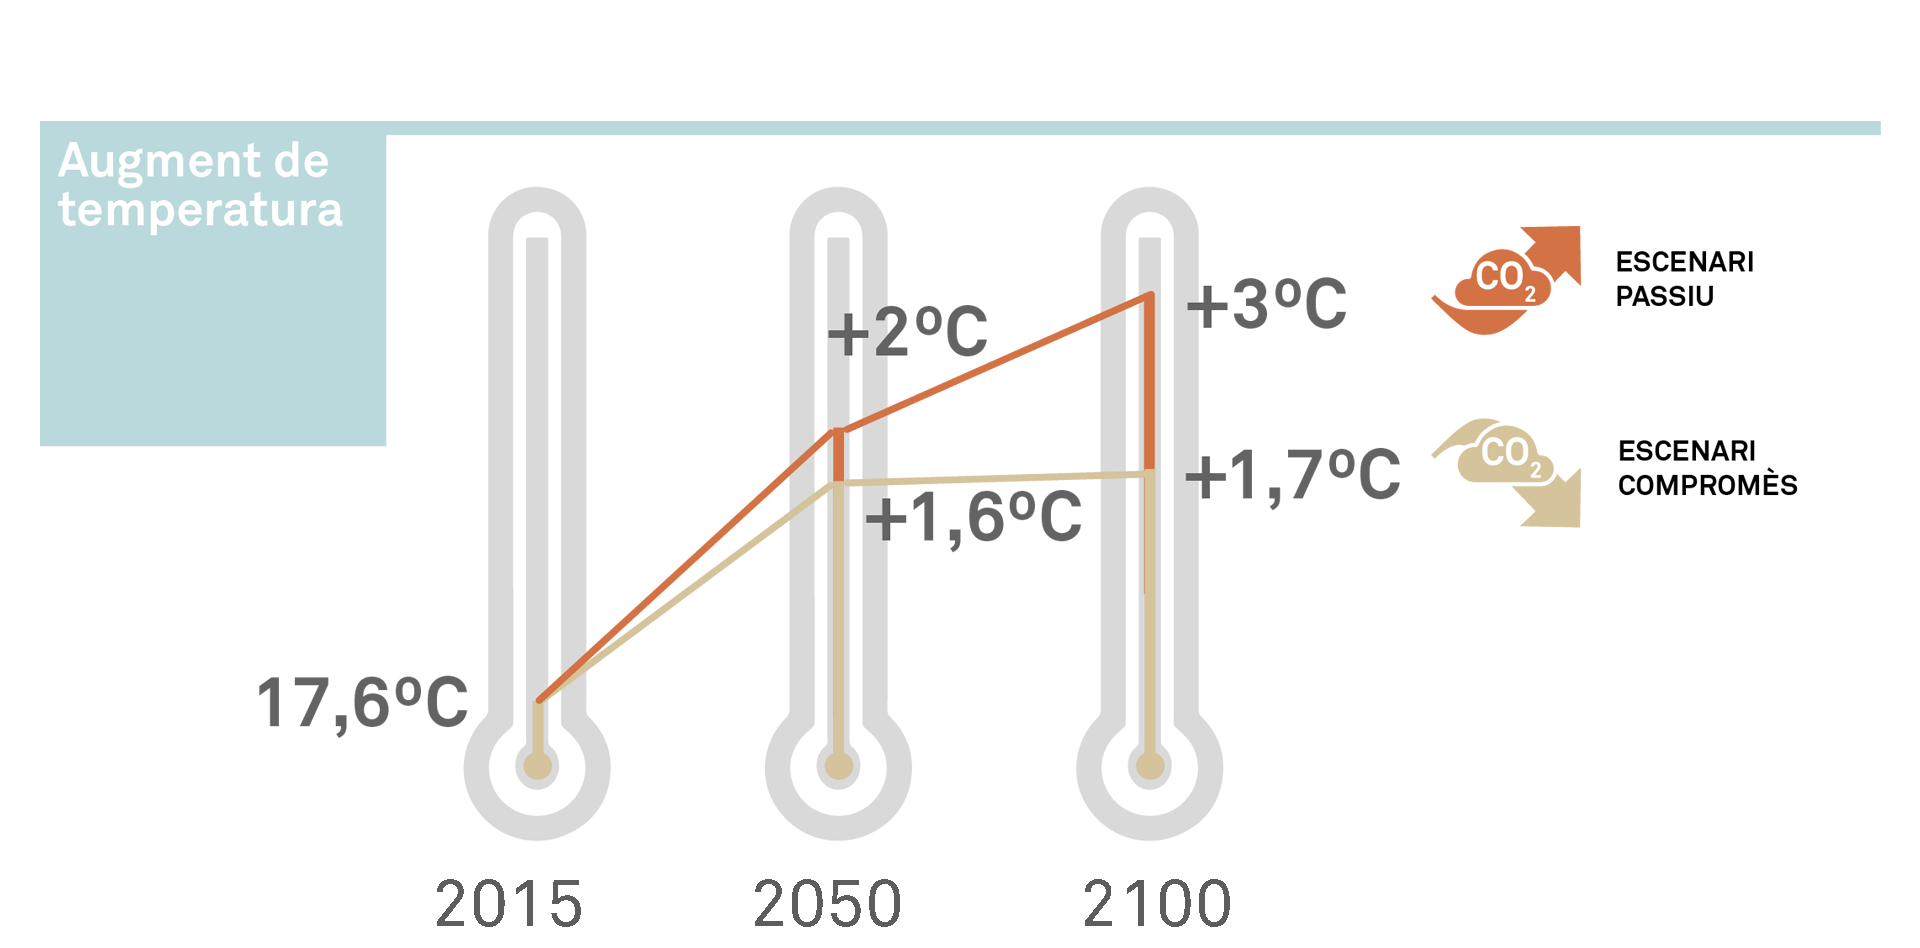 Augment de la temperatura